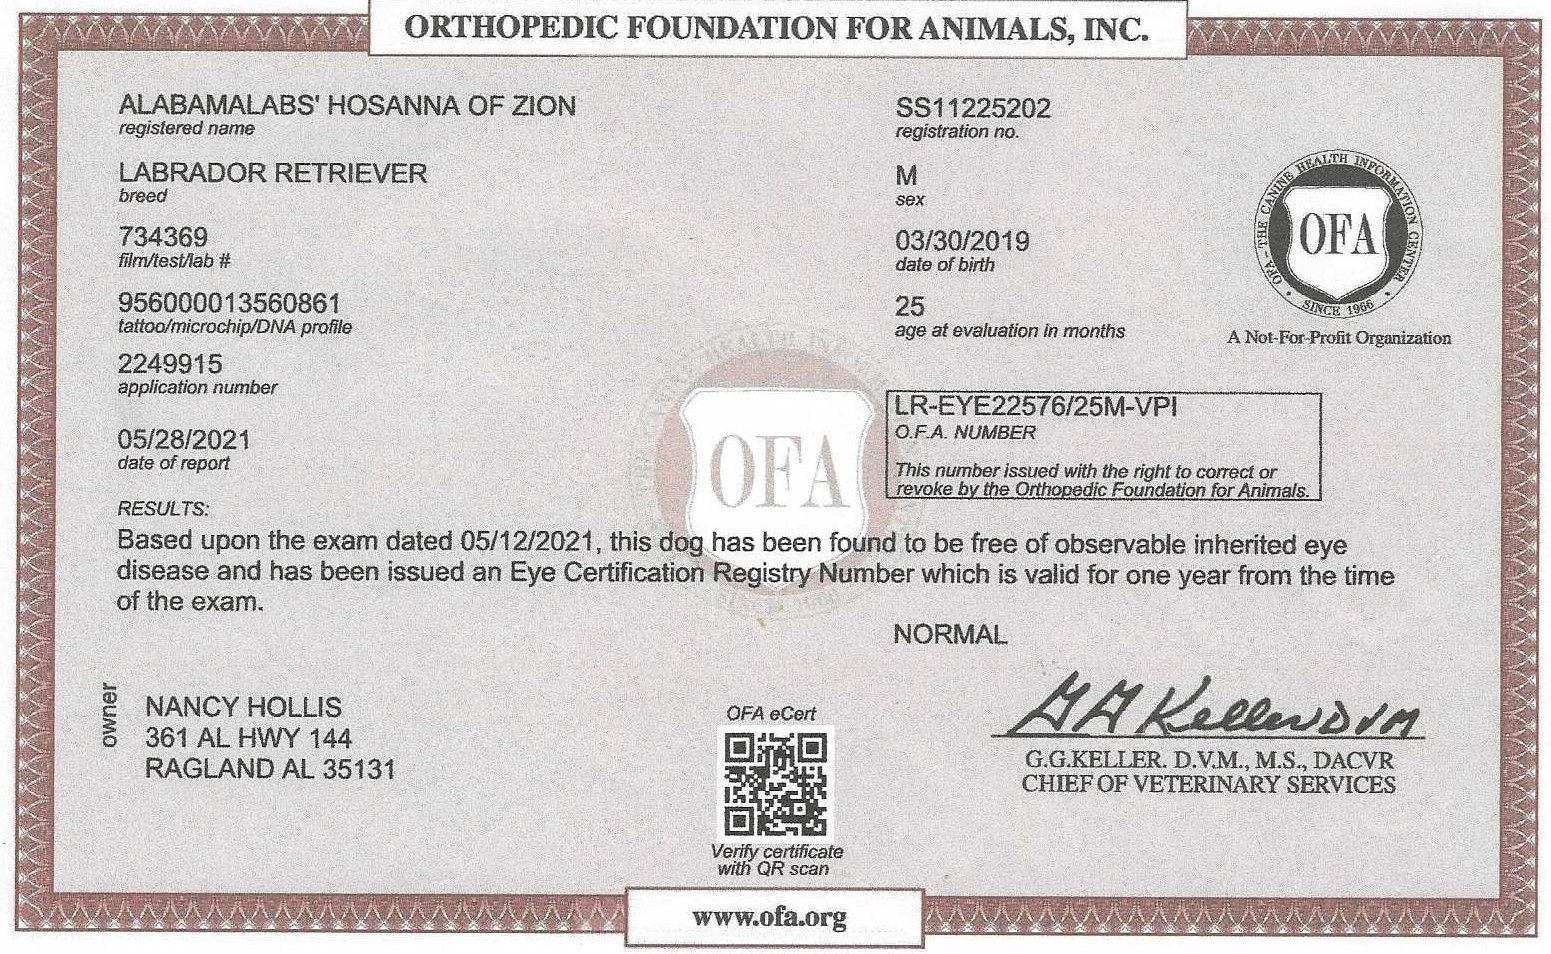 Hoss' OFA Eye Certification.jpg_1683056496